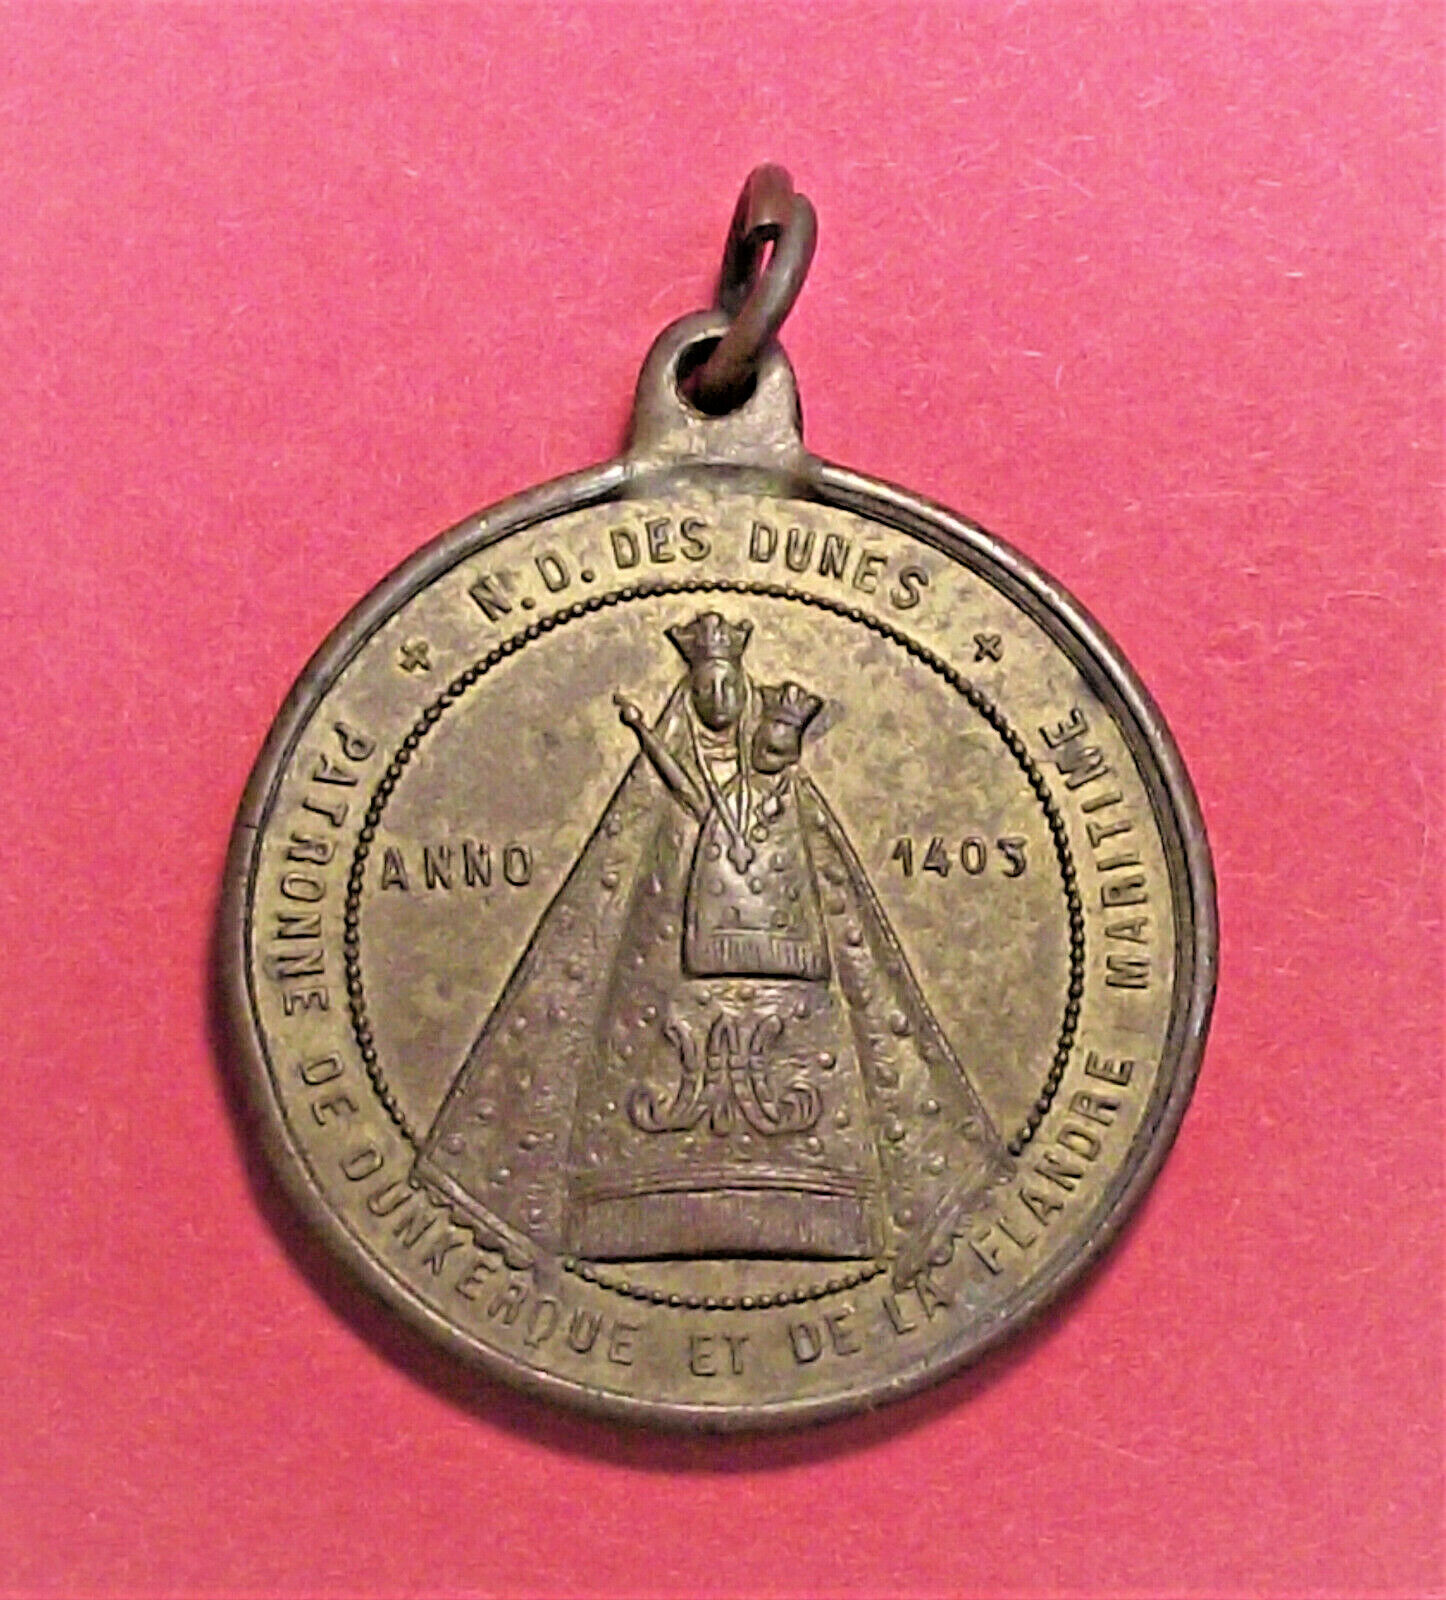 Notre Dame des Dunes Antique Catholic Medal (LOT C04) 1893 Dunkerque France